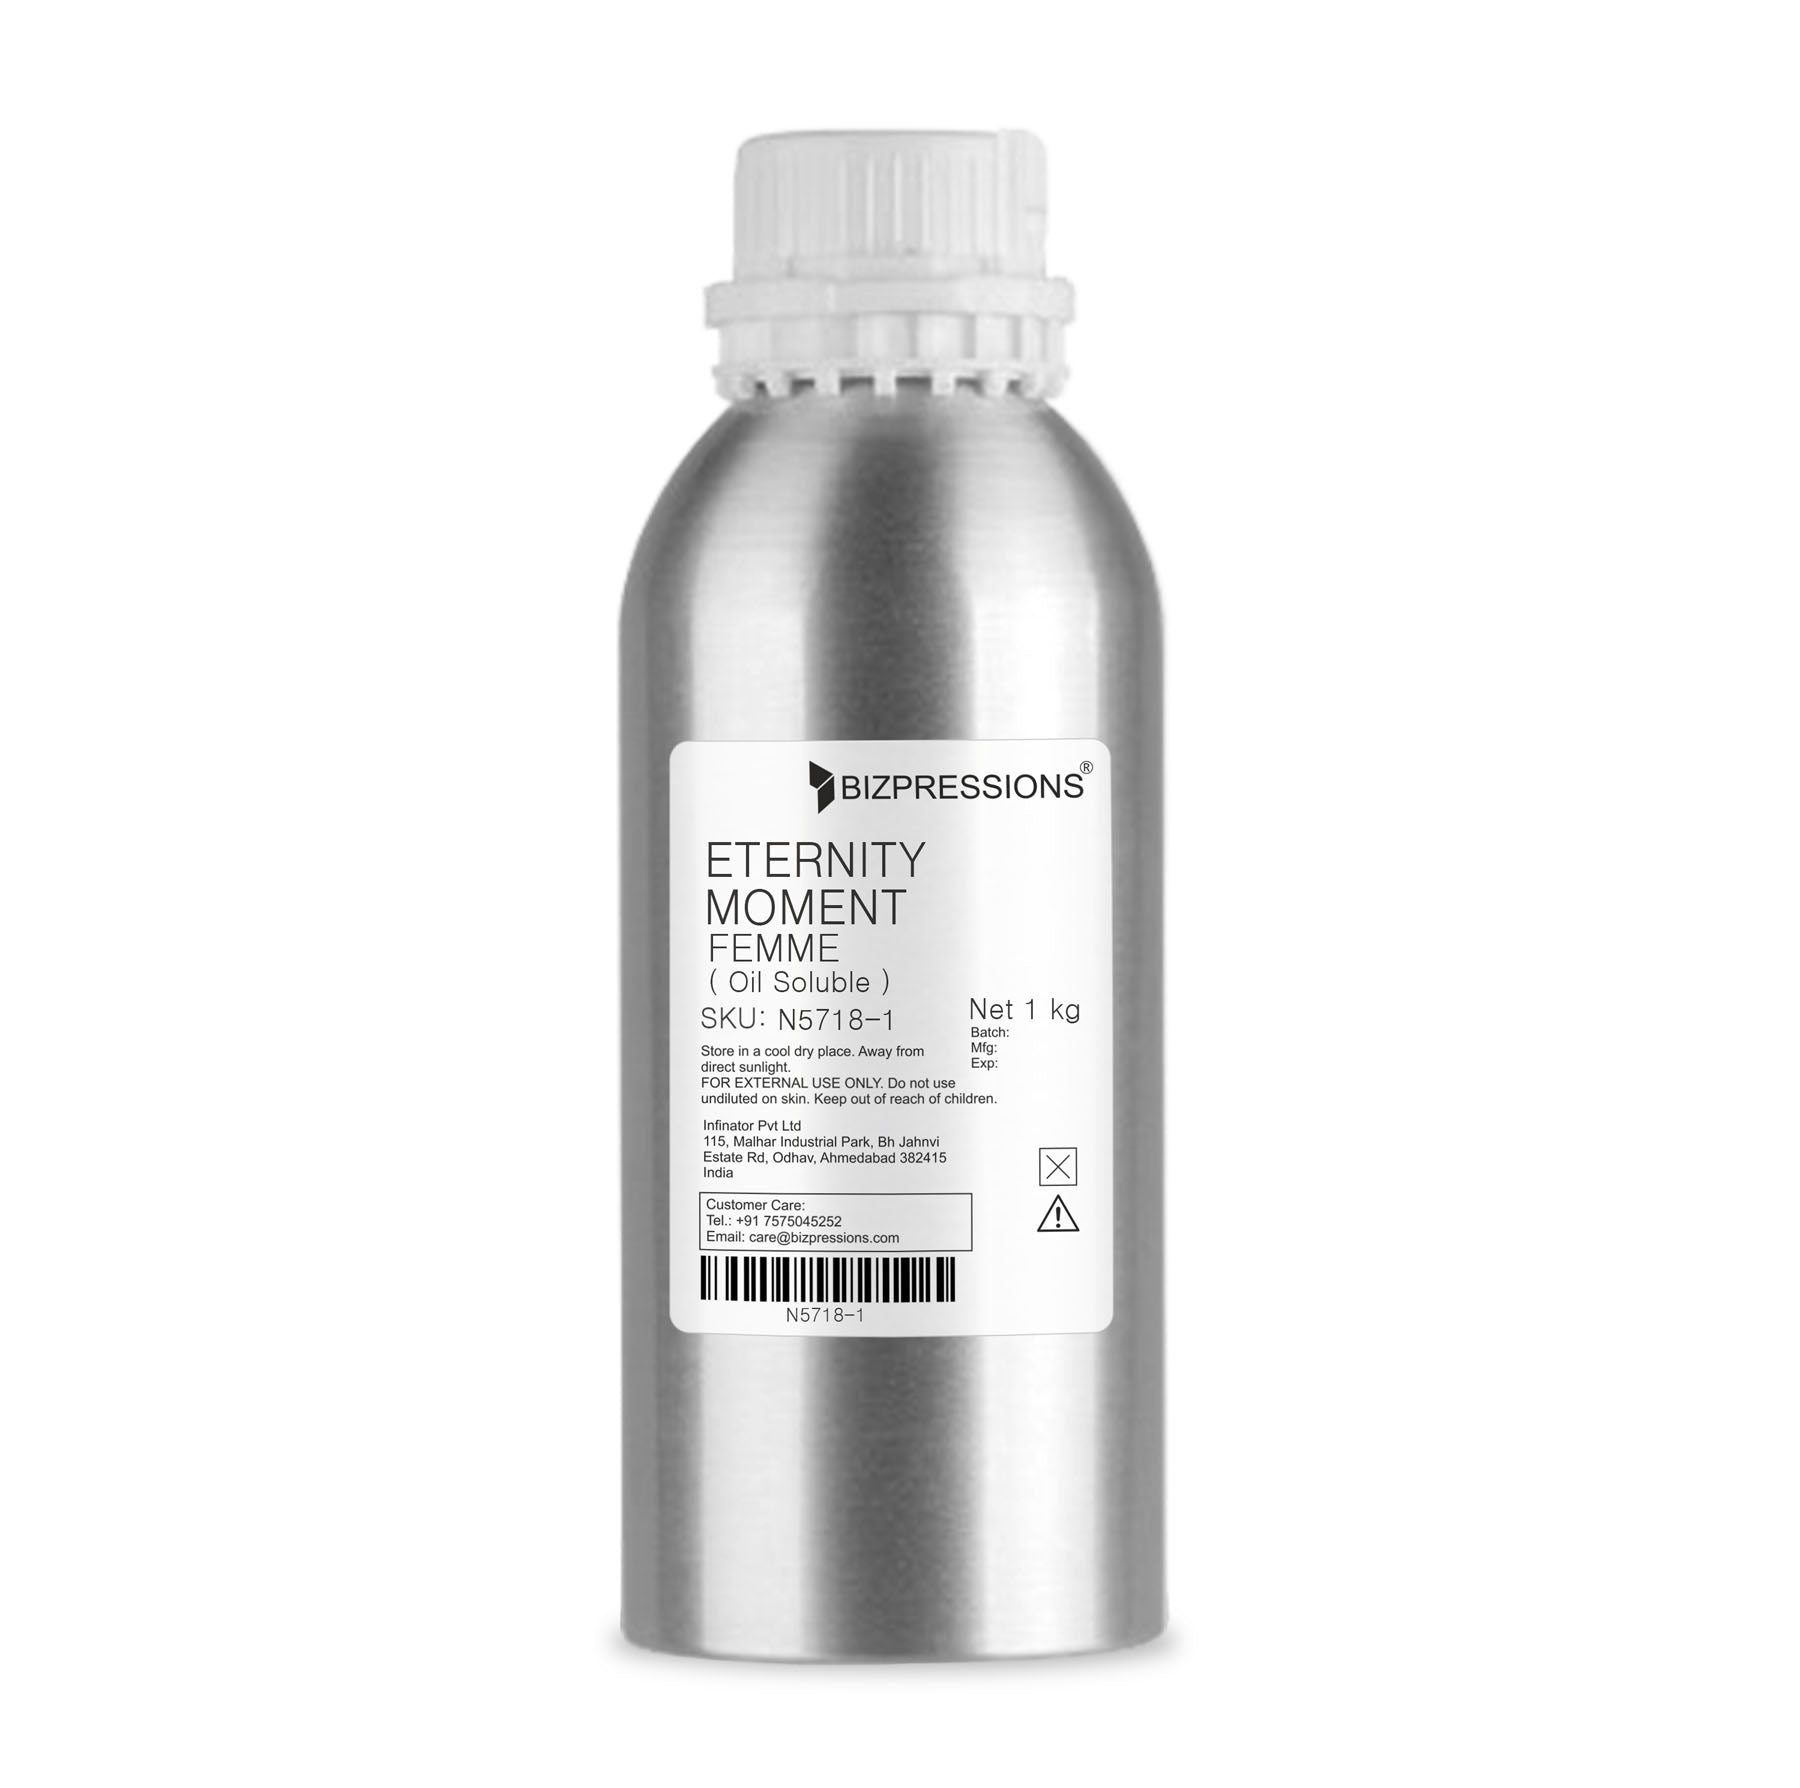 ETERNITY MOMENT FEMME - Fragrance ( Oil Soluble ) - 1 kg